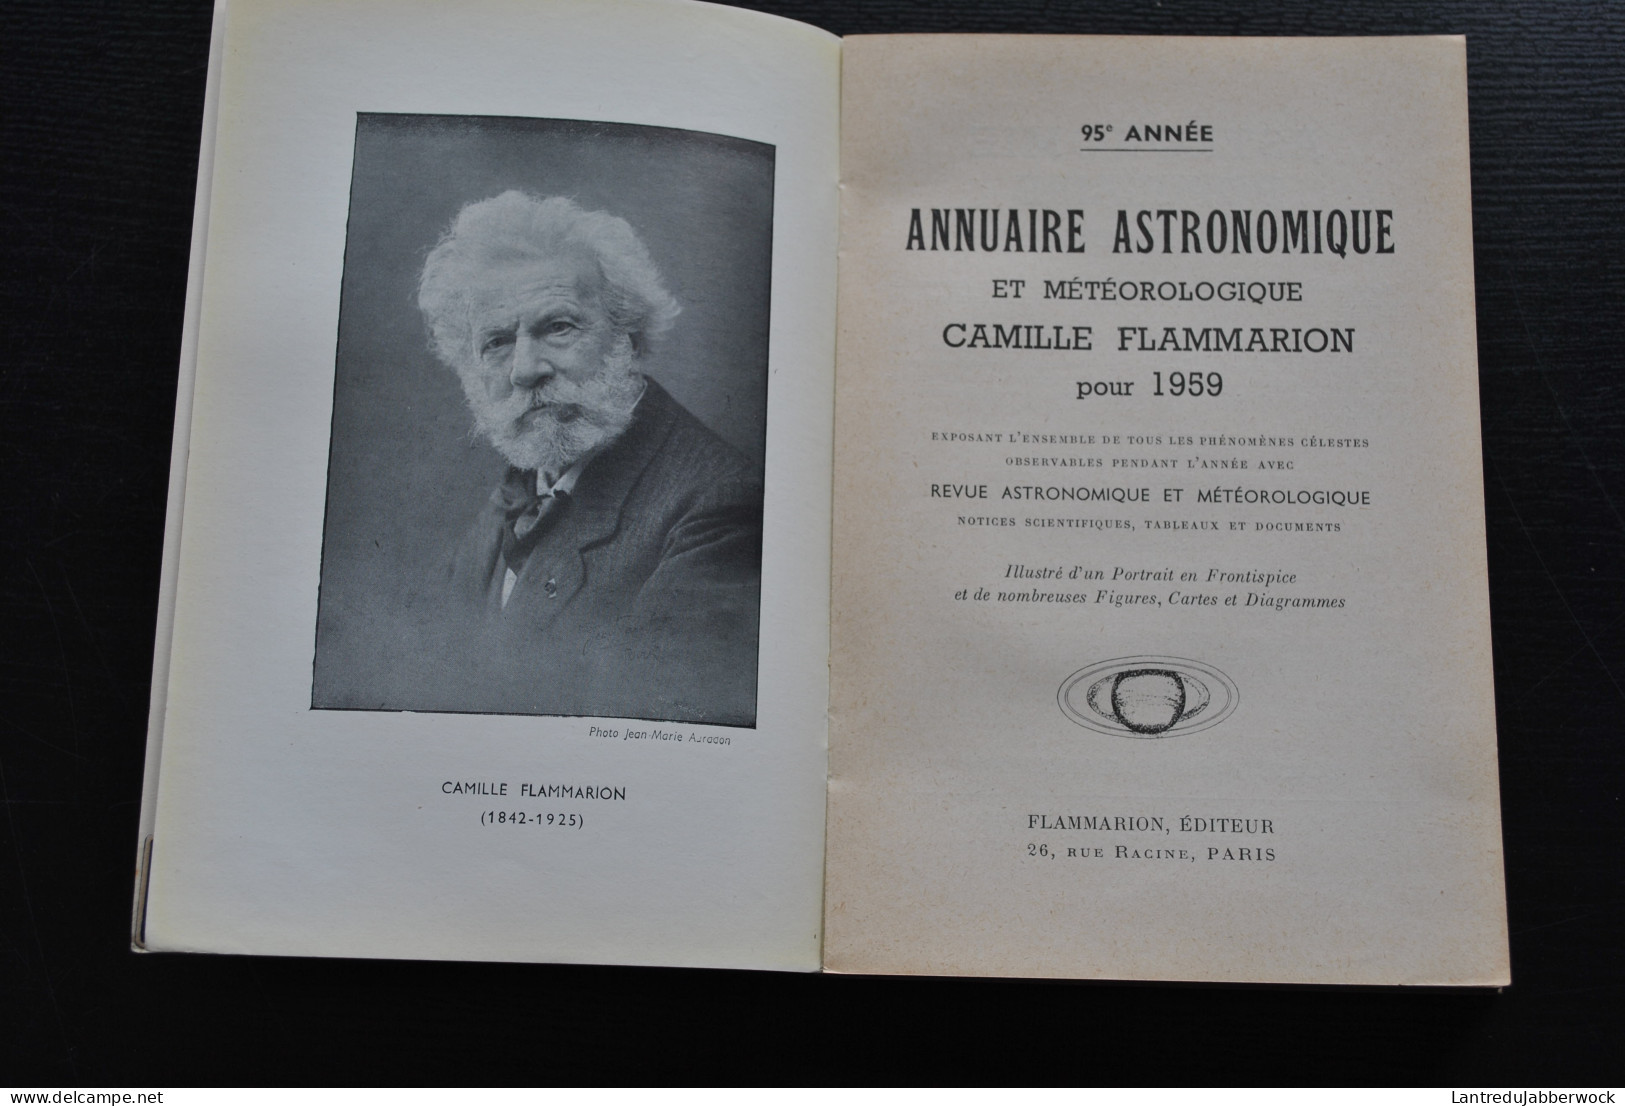 Annuaire Astronomique Et Météorologique Camille FLAMMARION 1959 Observatoire De Juvisy Astronomie Téléscope Calendrier - Astronomía